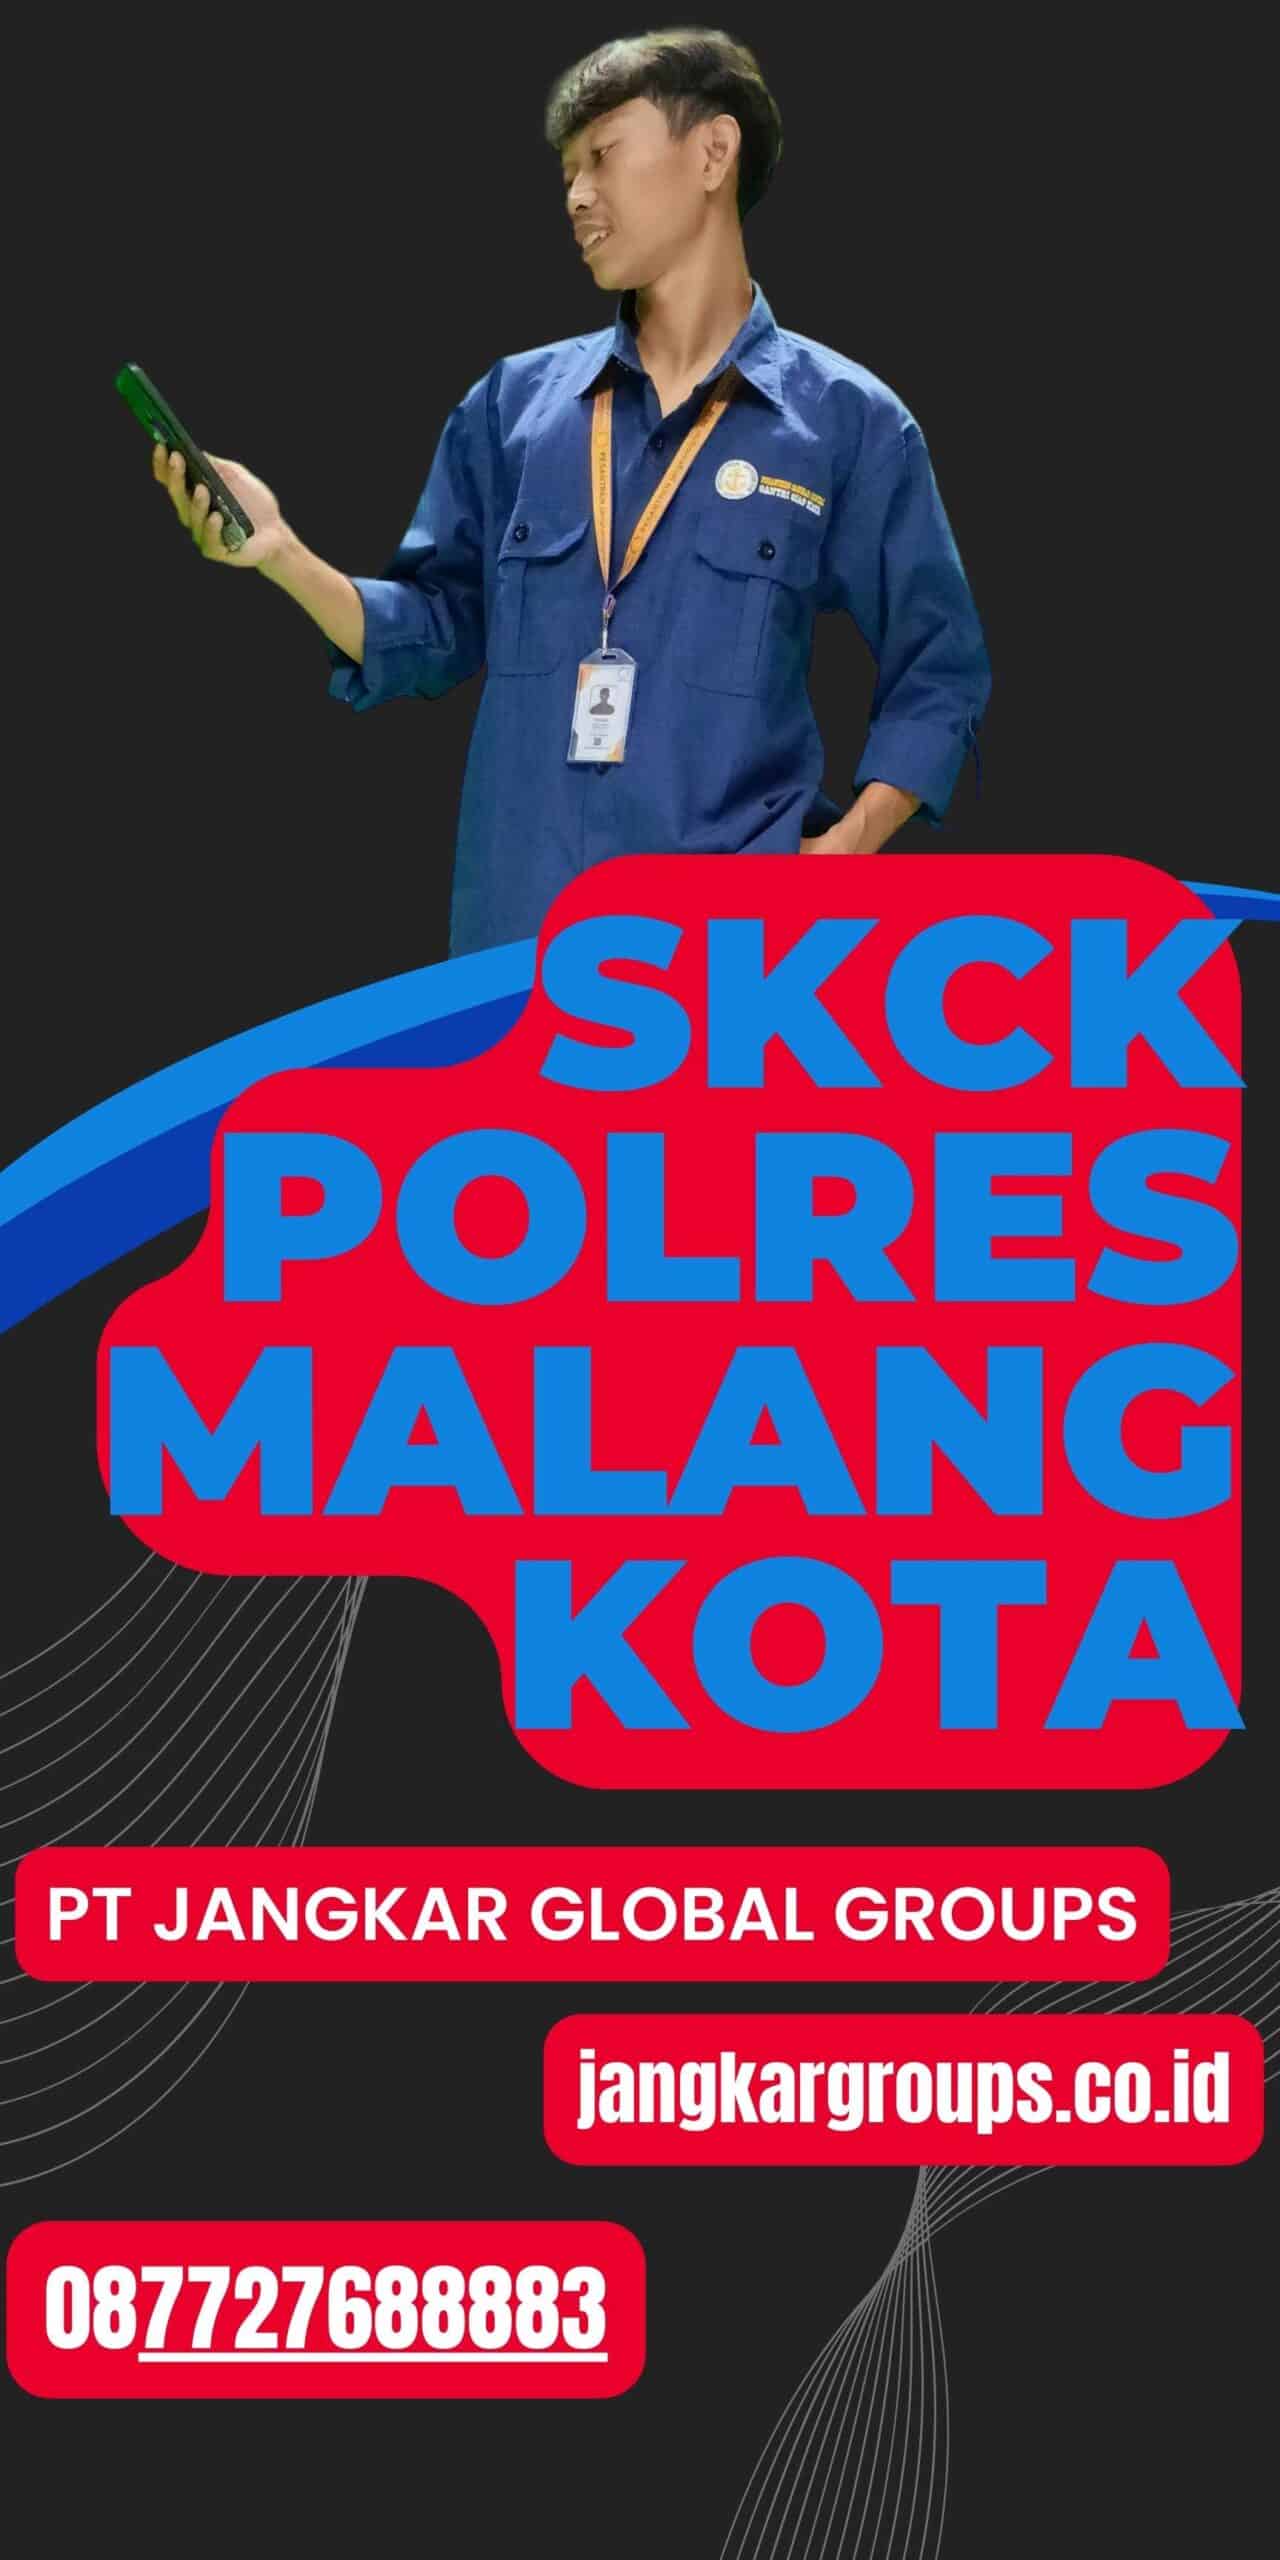 SKCK Polres Malang Kota